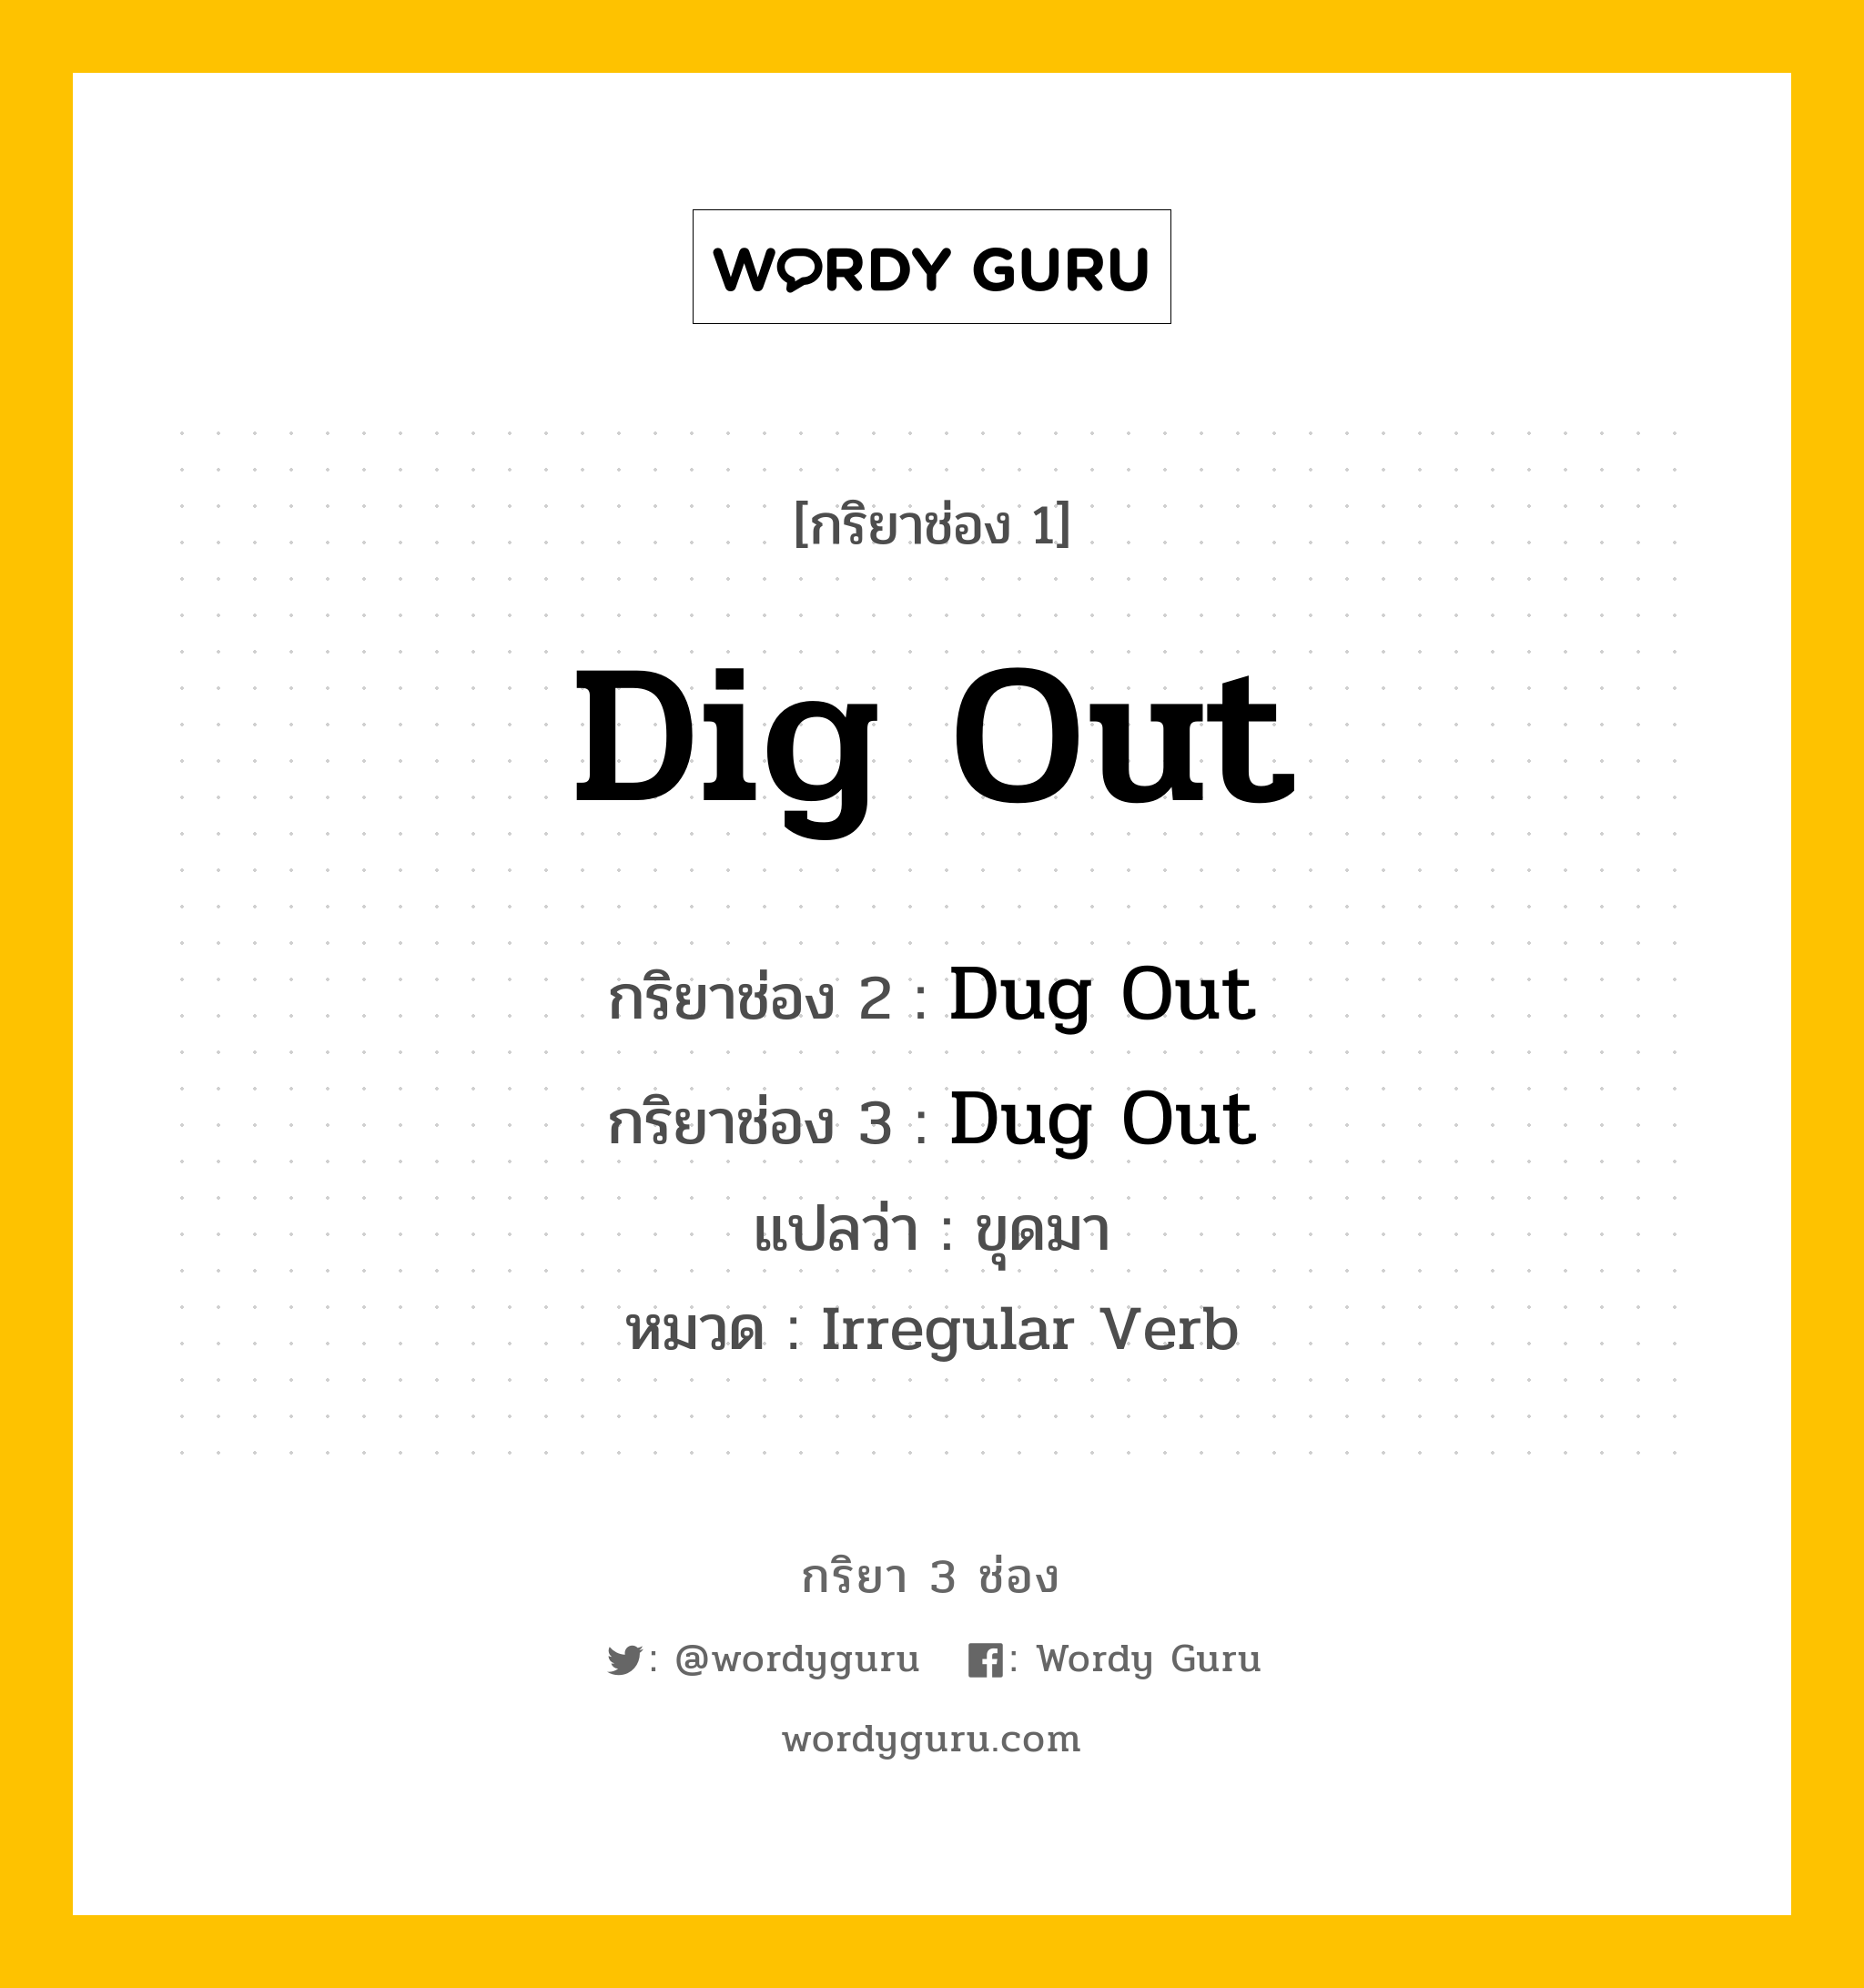 Dig Out มีกริยา 3 ช่องอะไรบ้าง? คำศัพท์ในกลุ่มประเภท Irregular Verb, กริยาช่อง 1 Dig Out กริยาช่อง 2 Dug Out กริยาช่อง 3 Dug Out แปลว่า ขุดมา หมวด Irregular Verb หมวด Irregular Verb